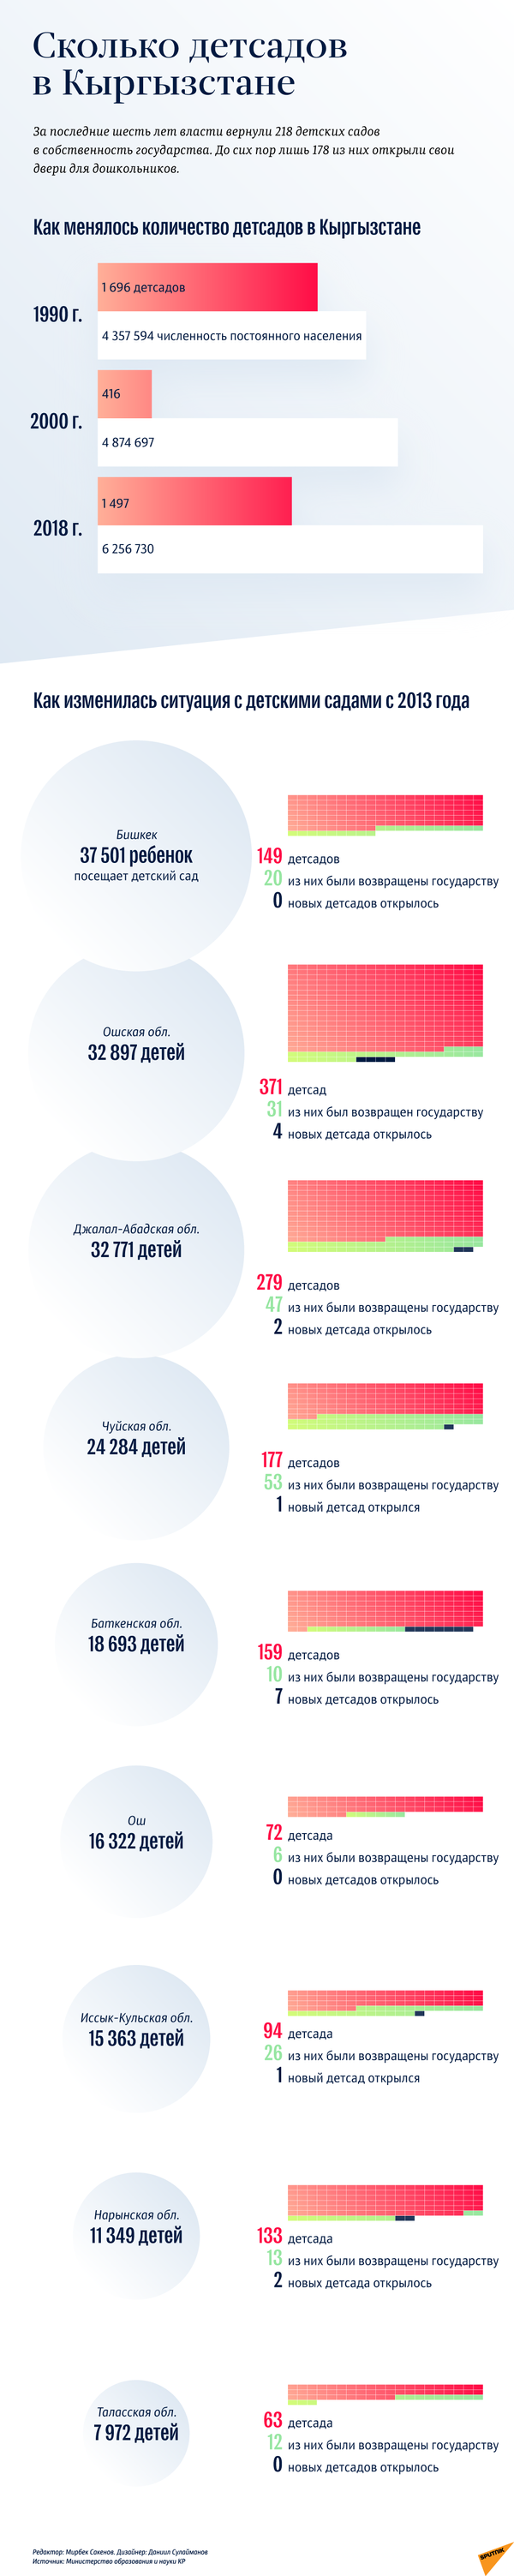 Количество детсадов в Кыргызстане  - Sputnik Кыргызстан